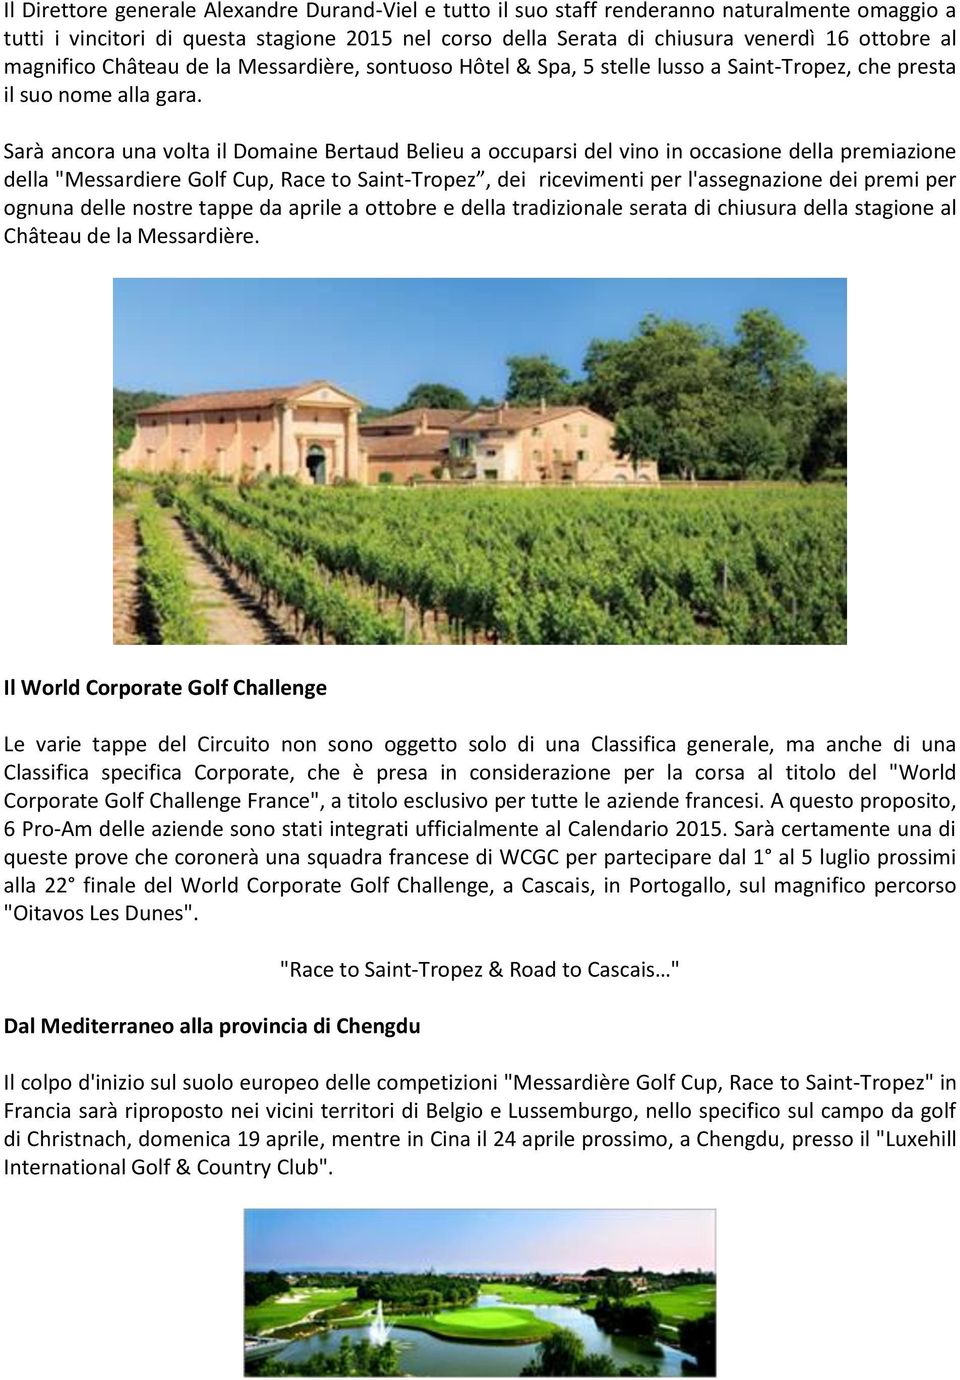 Sarà ancora una volta il Domaine Bertaud Belieu a occuparsi del vino in occasione della premiazione della "Messardiere Golf Cup, Race to Saint-Tropez, dei ricevimenti per l'assegnazione dei premi per